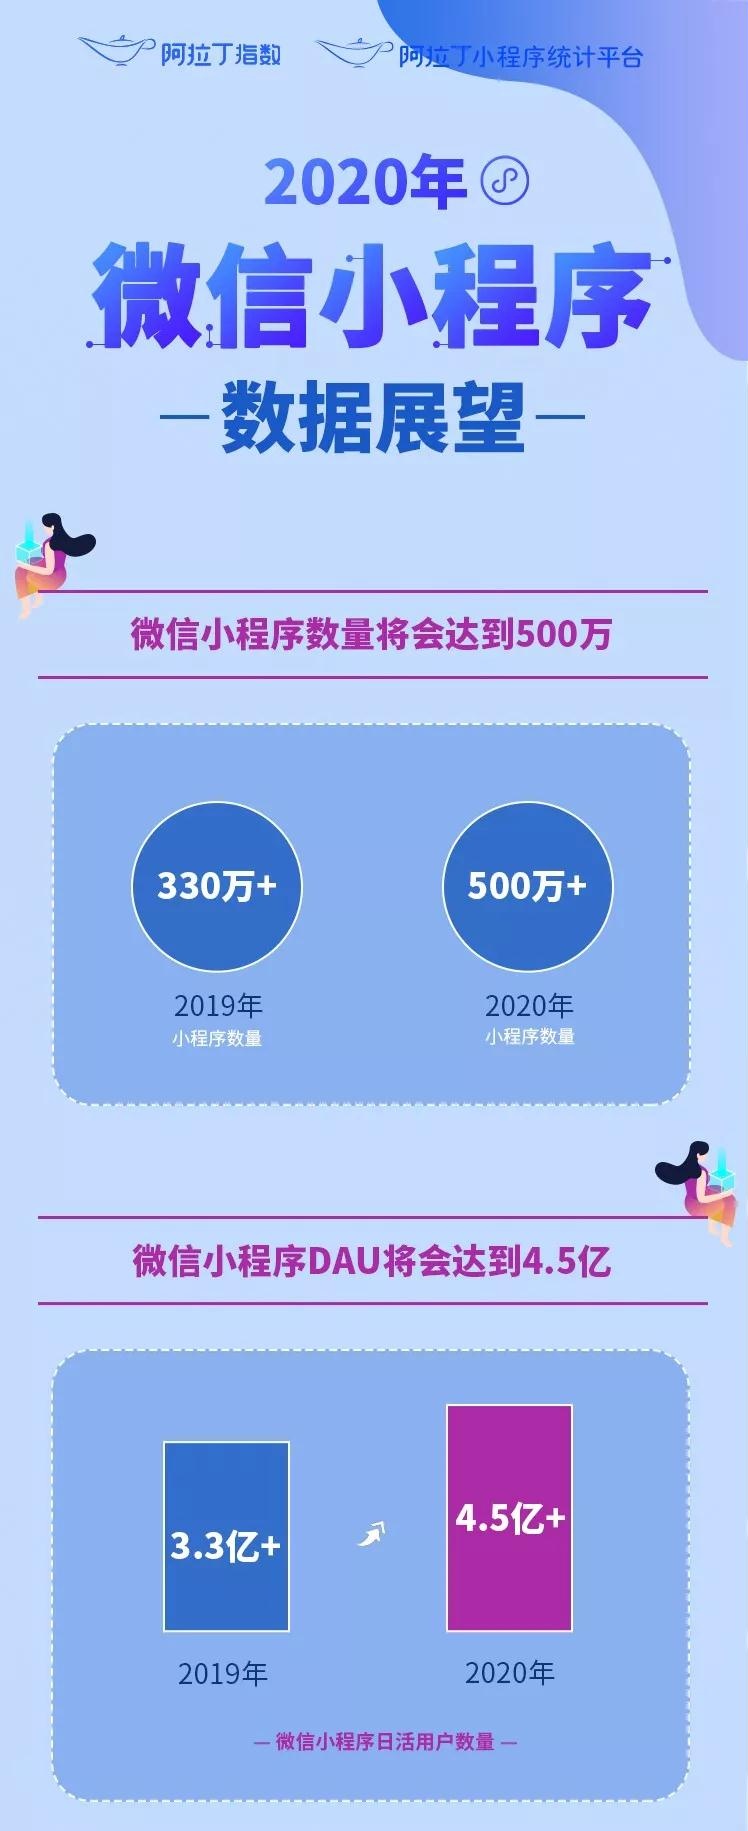 小程序的增速，远超我们的想象...2020年微信小程序数量将会达到500万